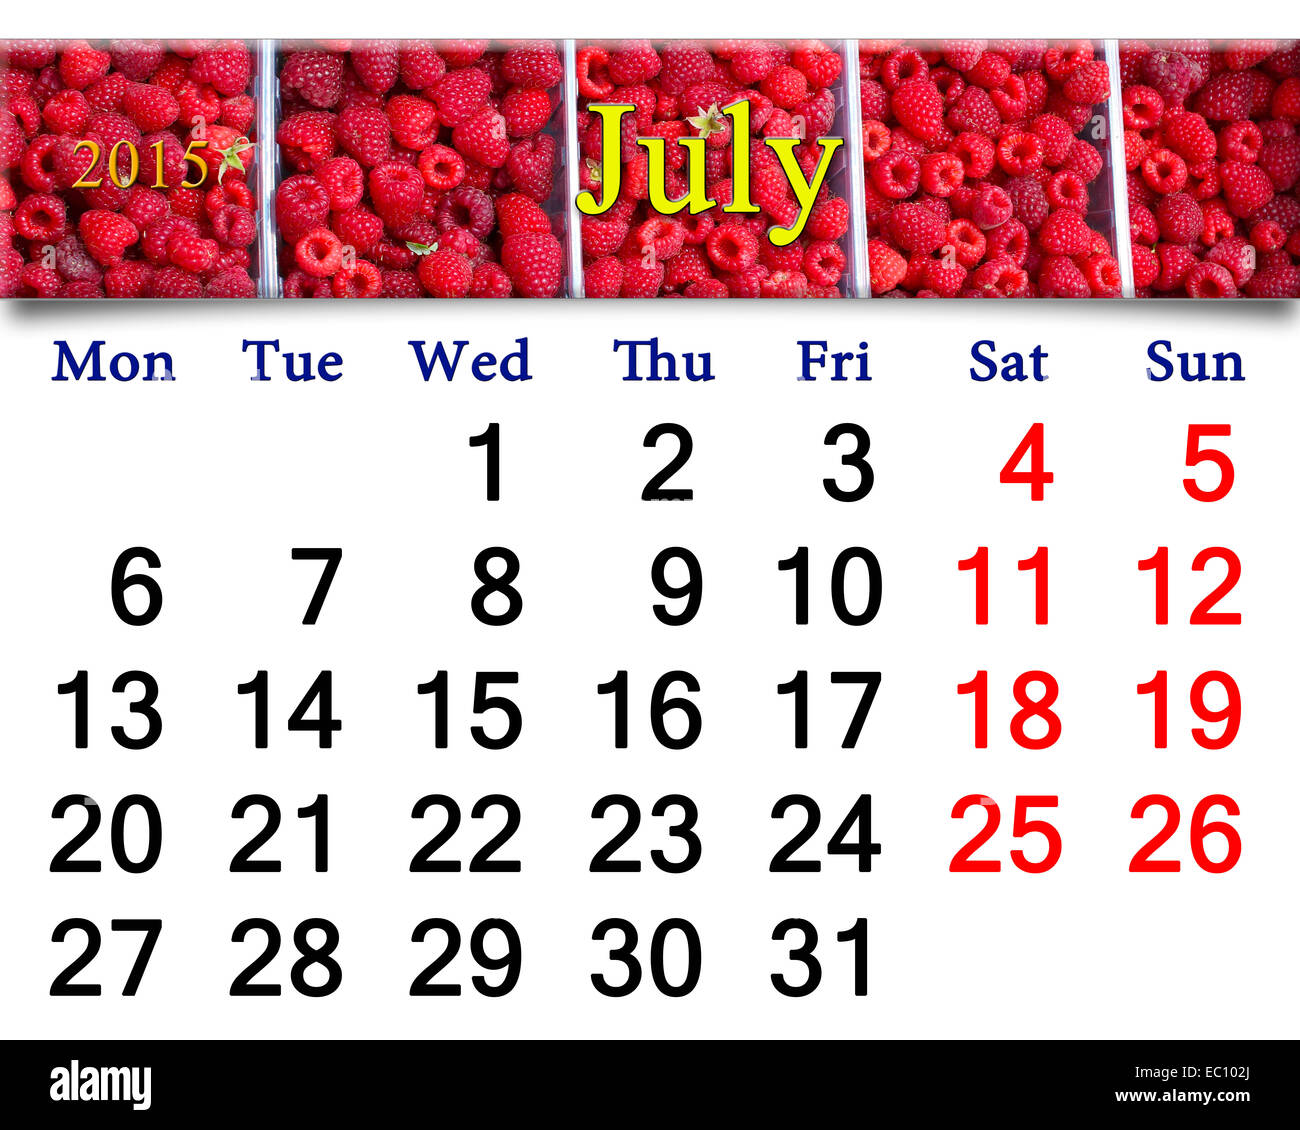 Calendrier pour juillet de l'année 2015 sur l'arrière-plan d'redraspberry mûrs Banque D'Images